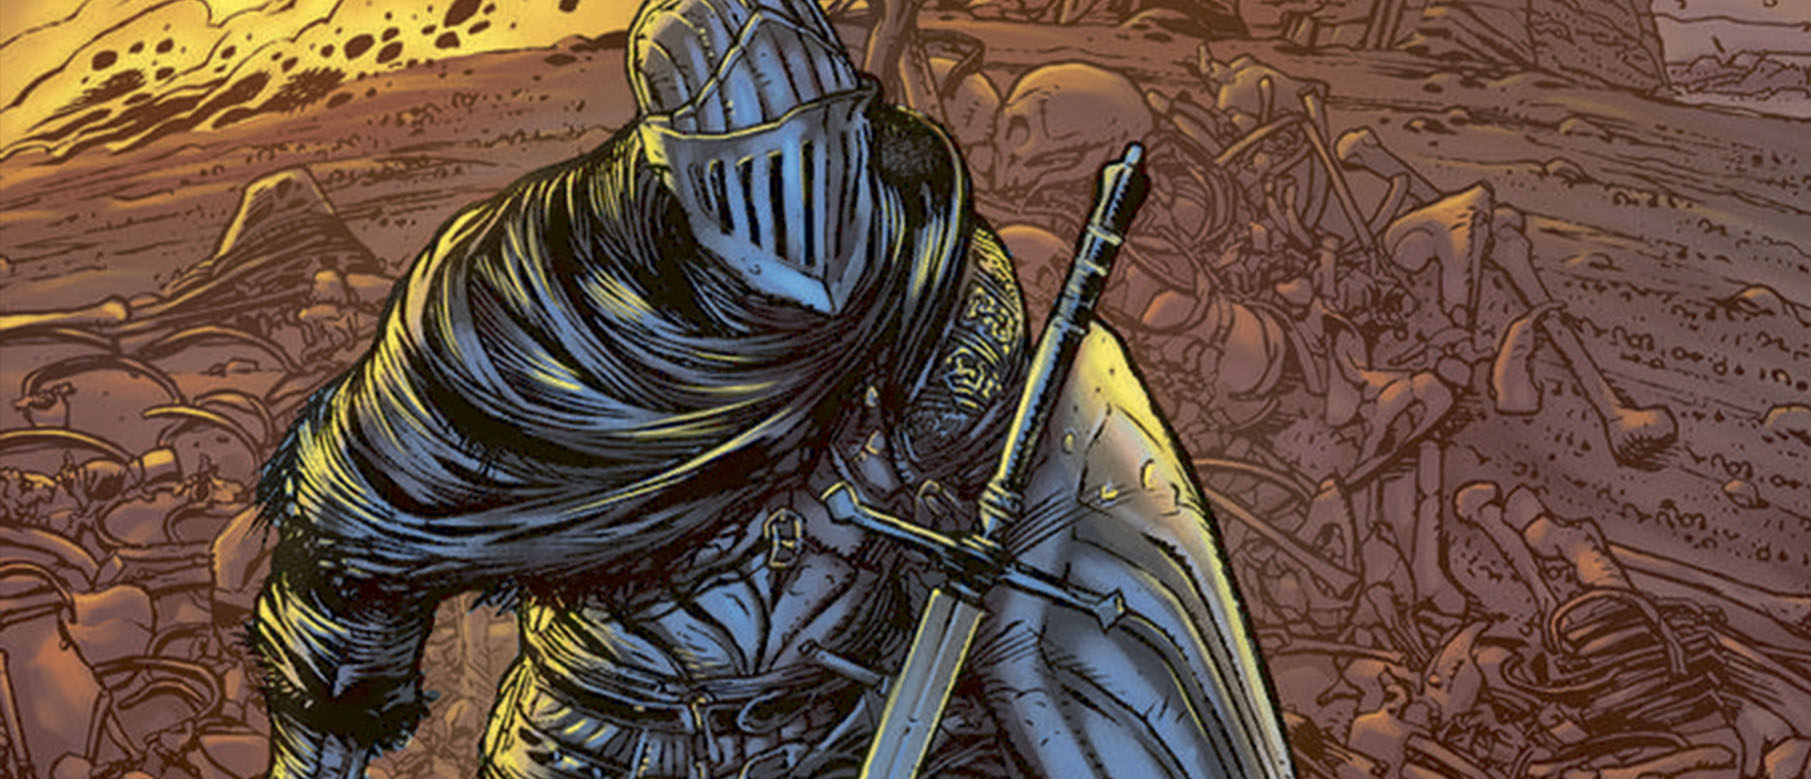 Изображение к Первый номер комиксов Dark Souls выйдет в апреле